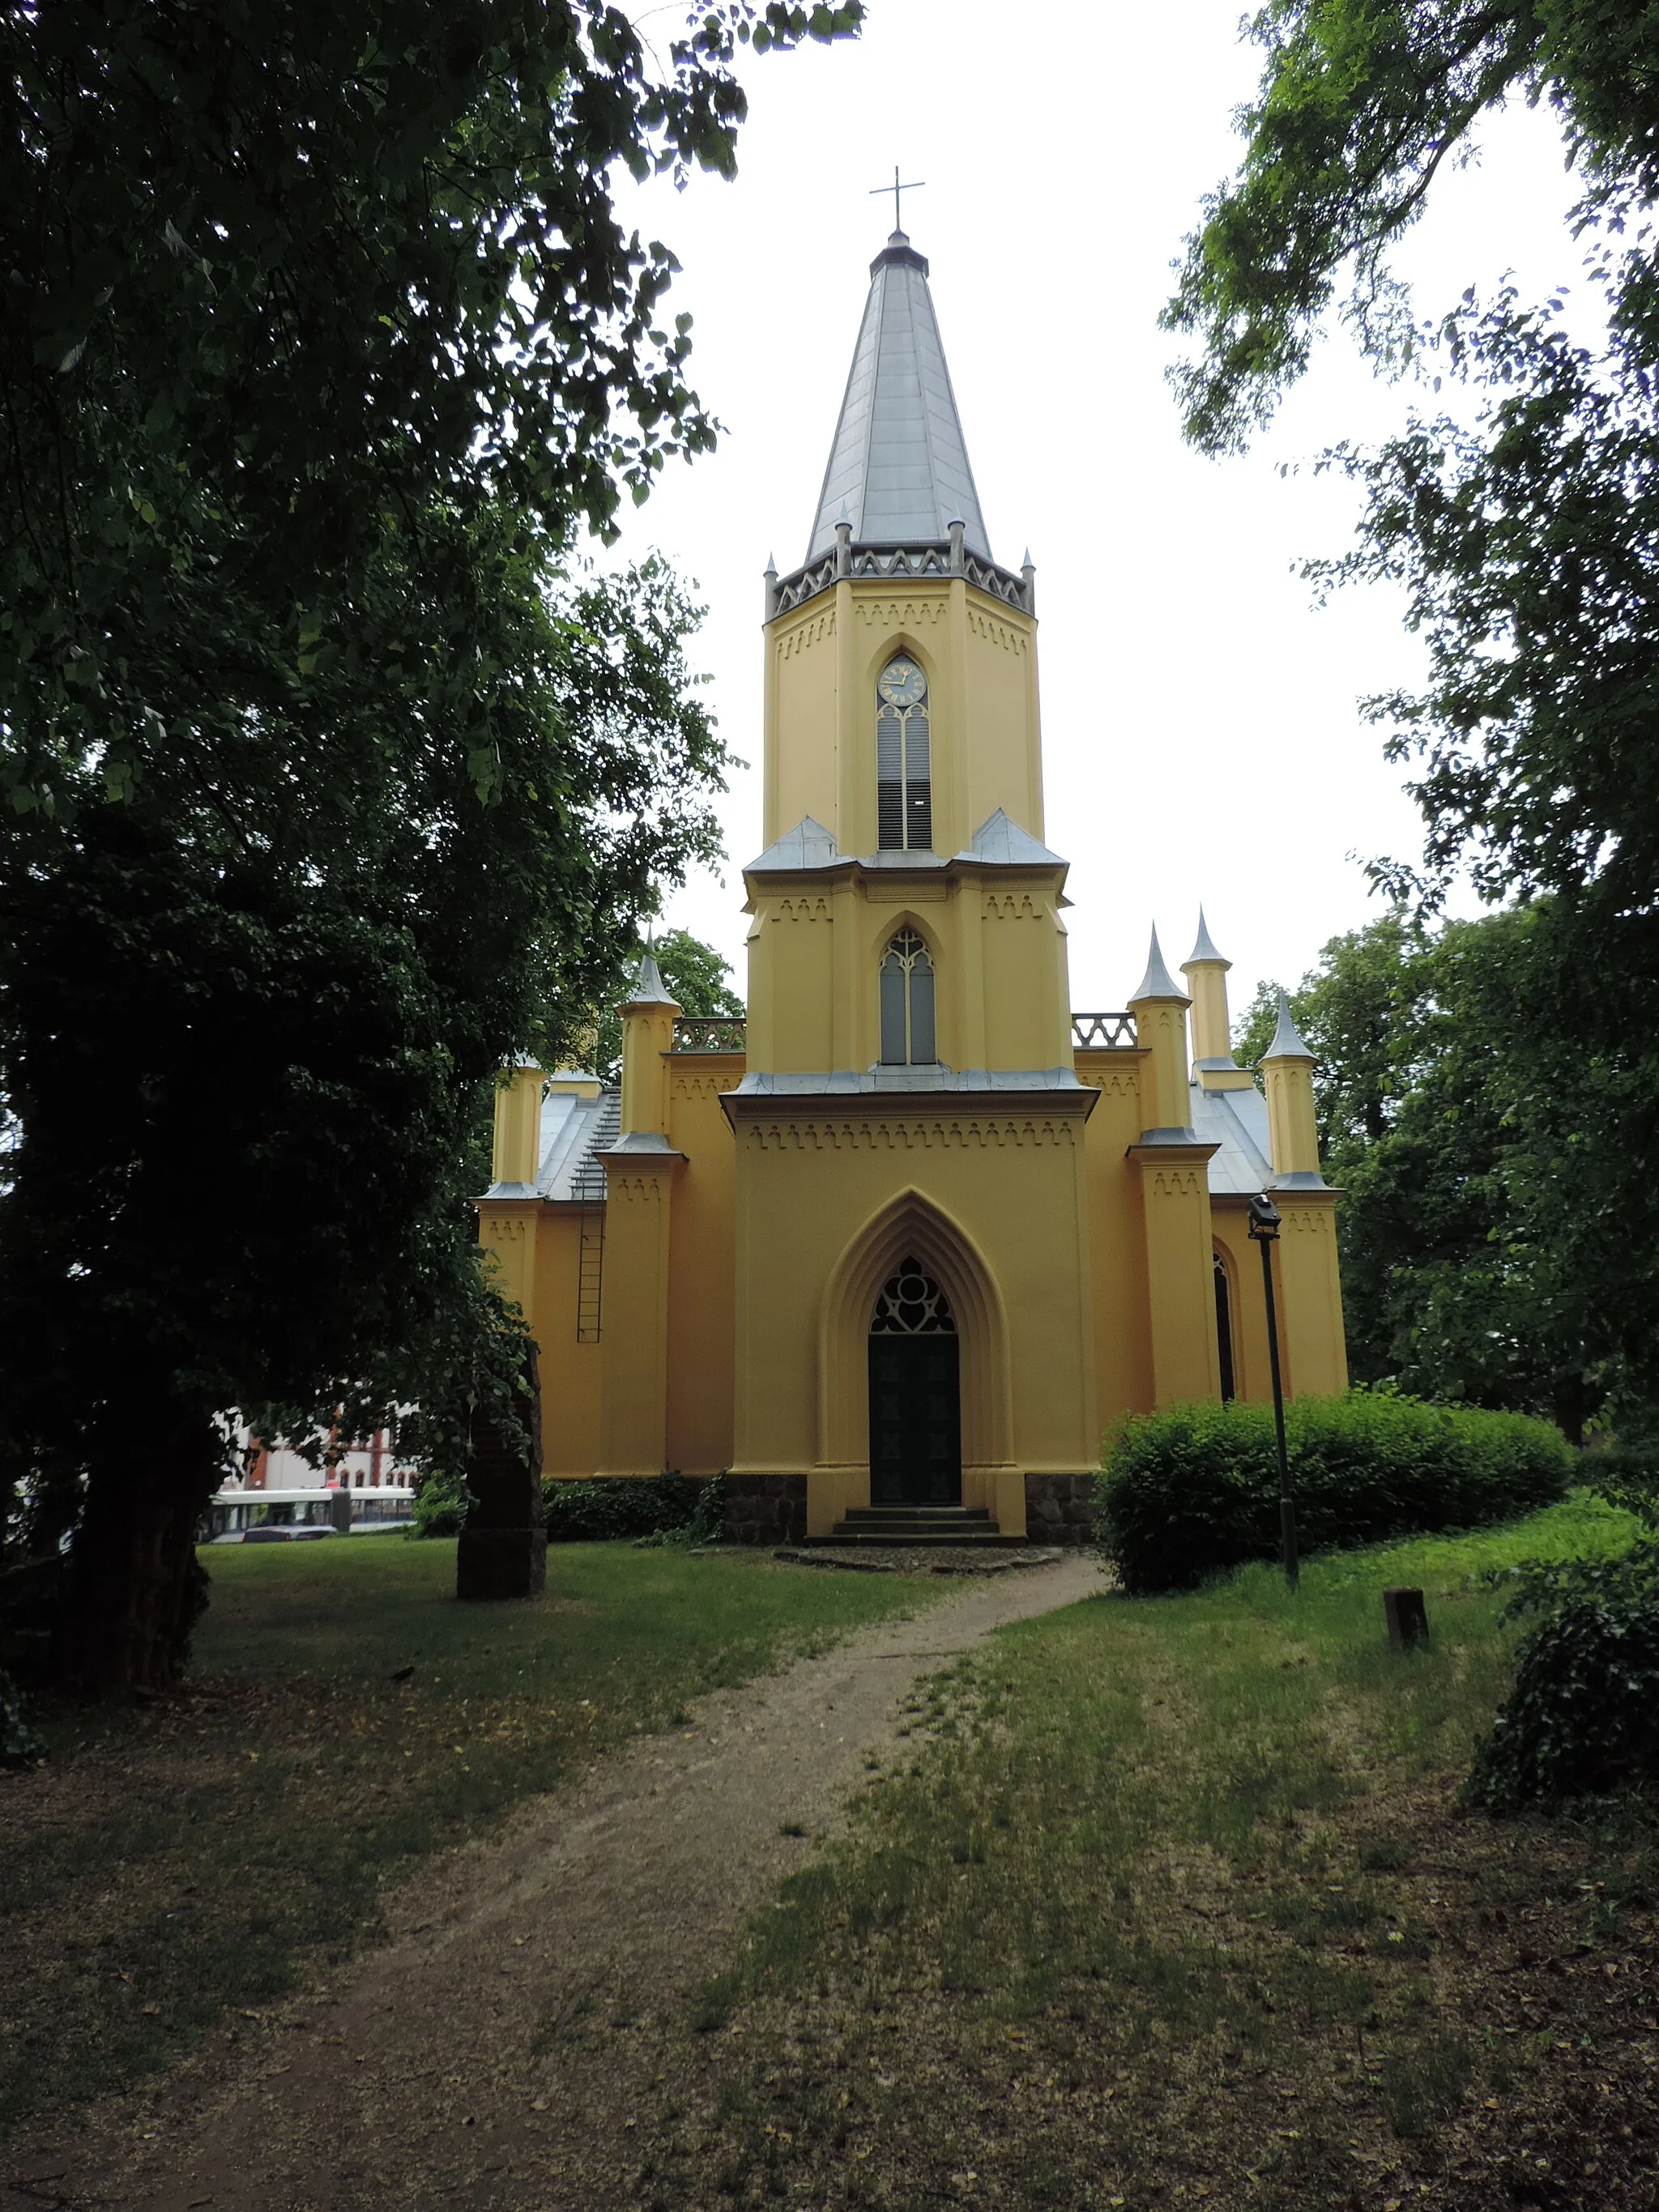 Photo showing: Kirche in Großbeeren von Karl Friedrich Schinkel